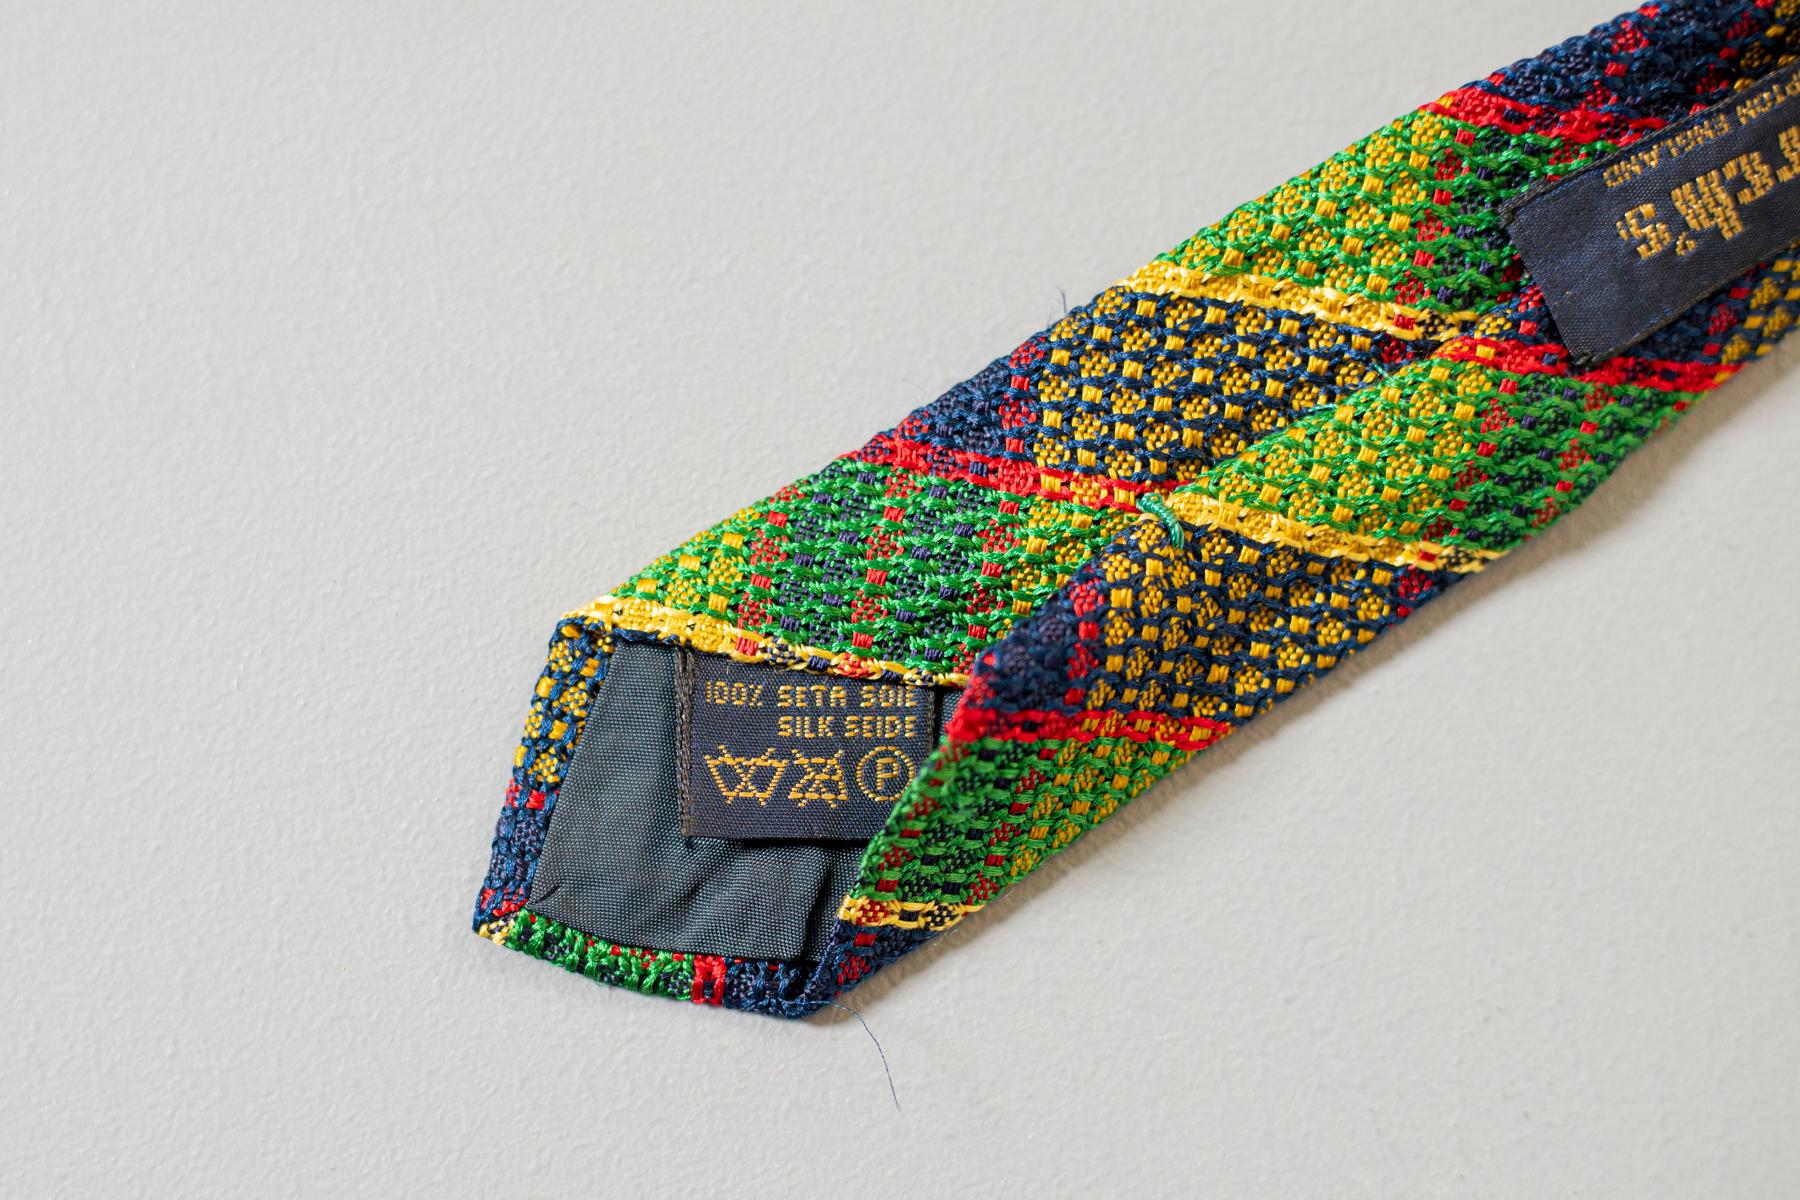 Colorée et voyante, cette cravate affiche un motif jacquard à carreaux dans les tons vert, rouge, jaune et bleu. Conçu par Church's et fabriqué à Northampton, en Angleterre, ce vêtement est de qualité. Cette cravate est la combinaison entre le style